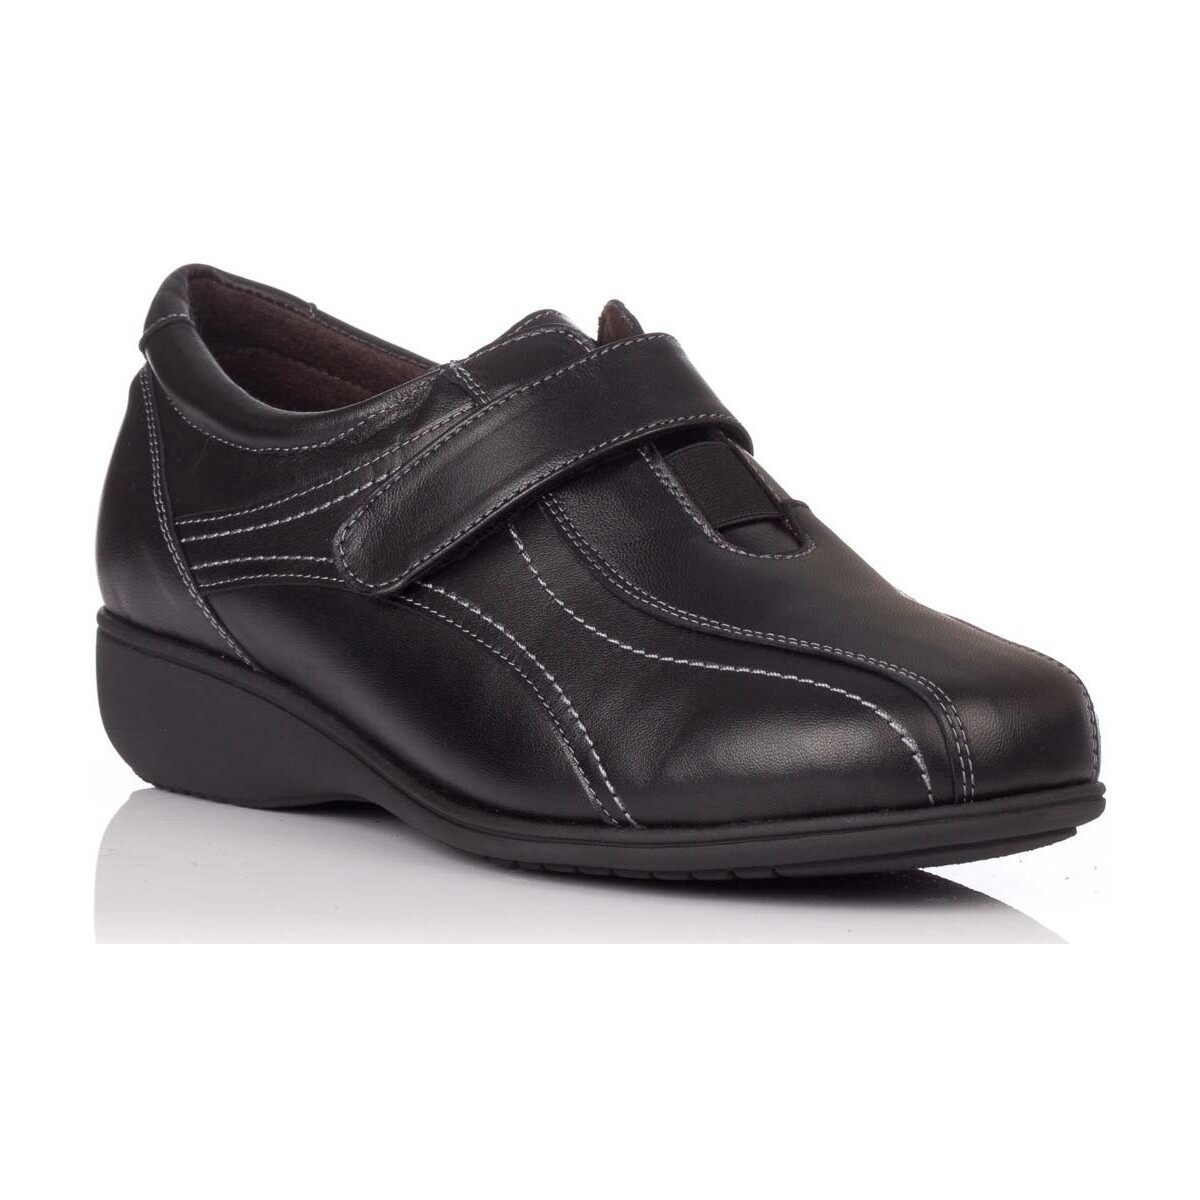 Sapatos Mulher Sapatos Doctor Cutillas 53101 Preto